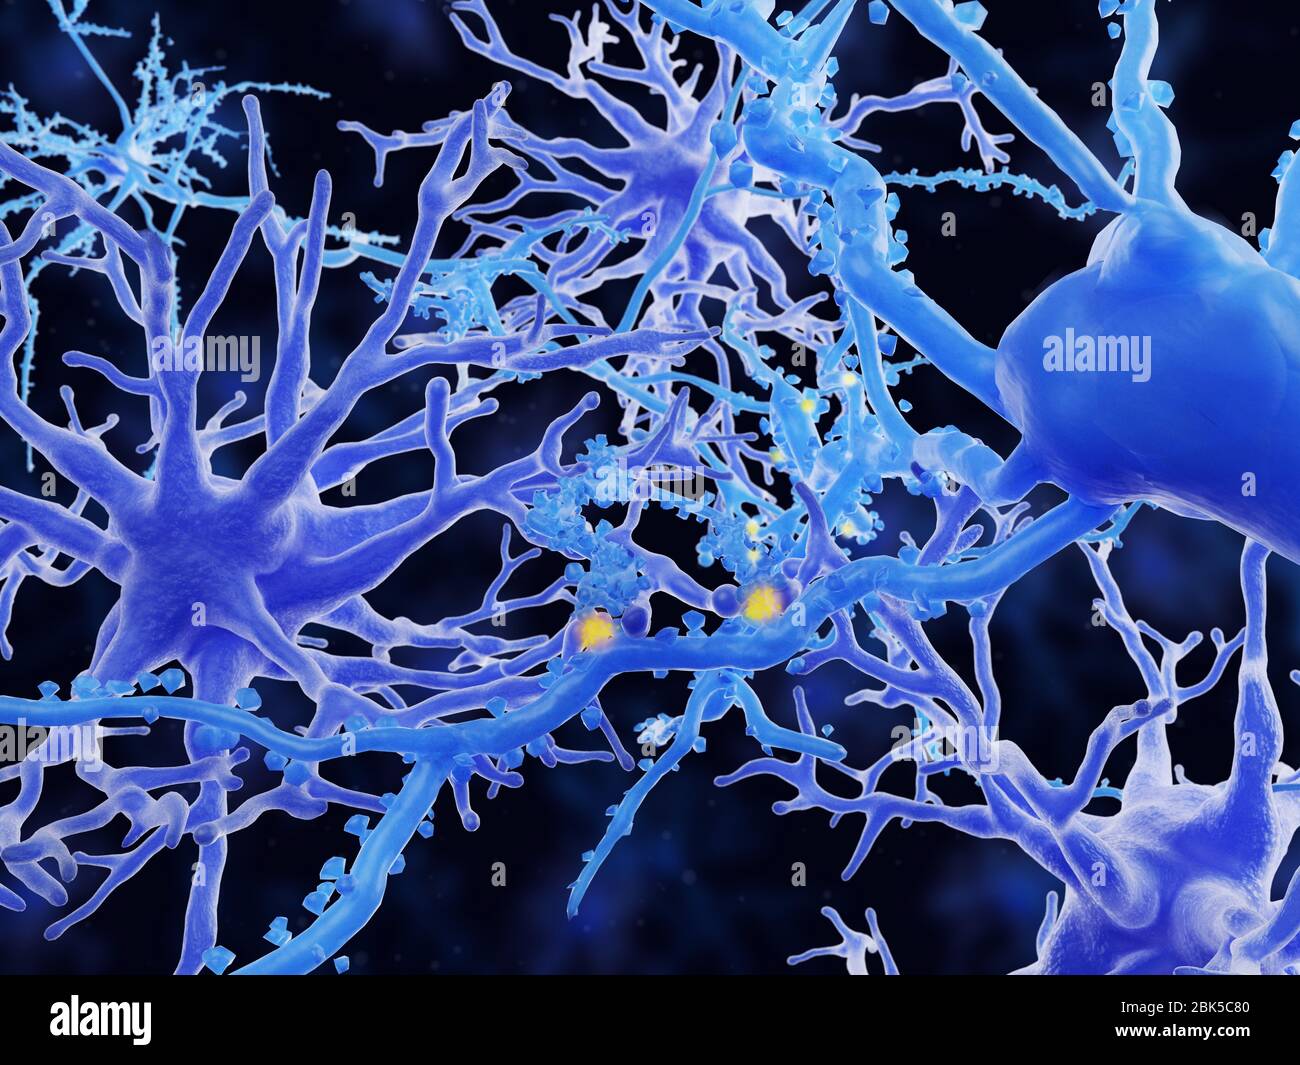 Illustration d'astrocytes protoplasmiques. Les astrocytes sont un type de cellule gliale. Ils fournissent un soutien structurel et une protection aux neurones (cellules nerveuses) et leur fournissent également des nutriments et de l'oxygène. Les astrocytes sont subdivisés en types fibreux et protoplasmiques. Les astrocytes protoplasmiques sont présents dans la matière grise du cerveau et ont des processus relativement courts qui se rattachant aux corps cellulaires des neurones. Banque D'Images